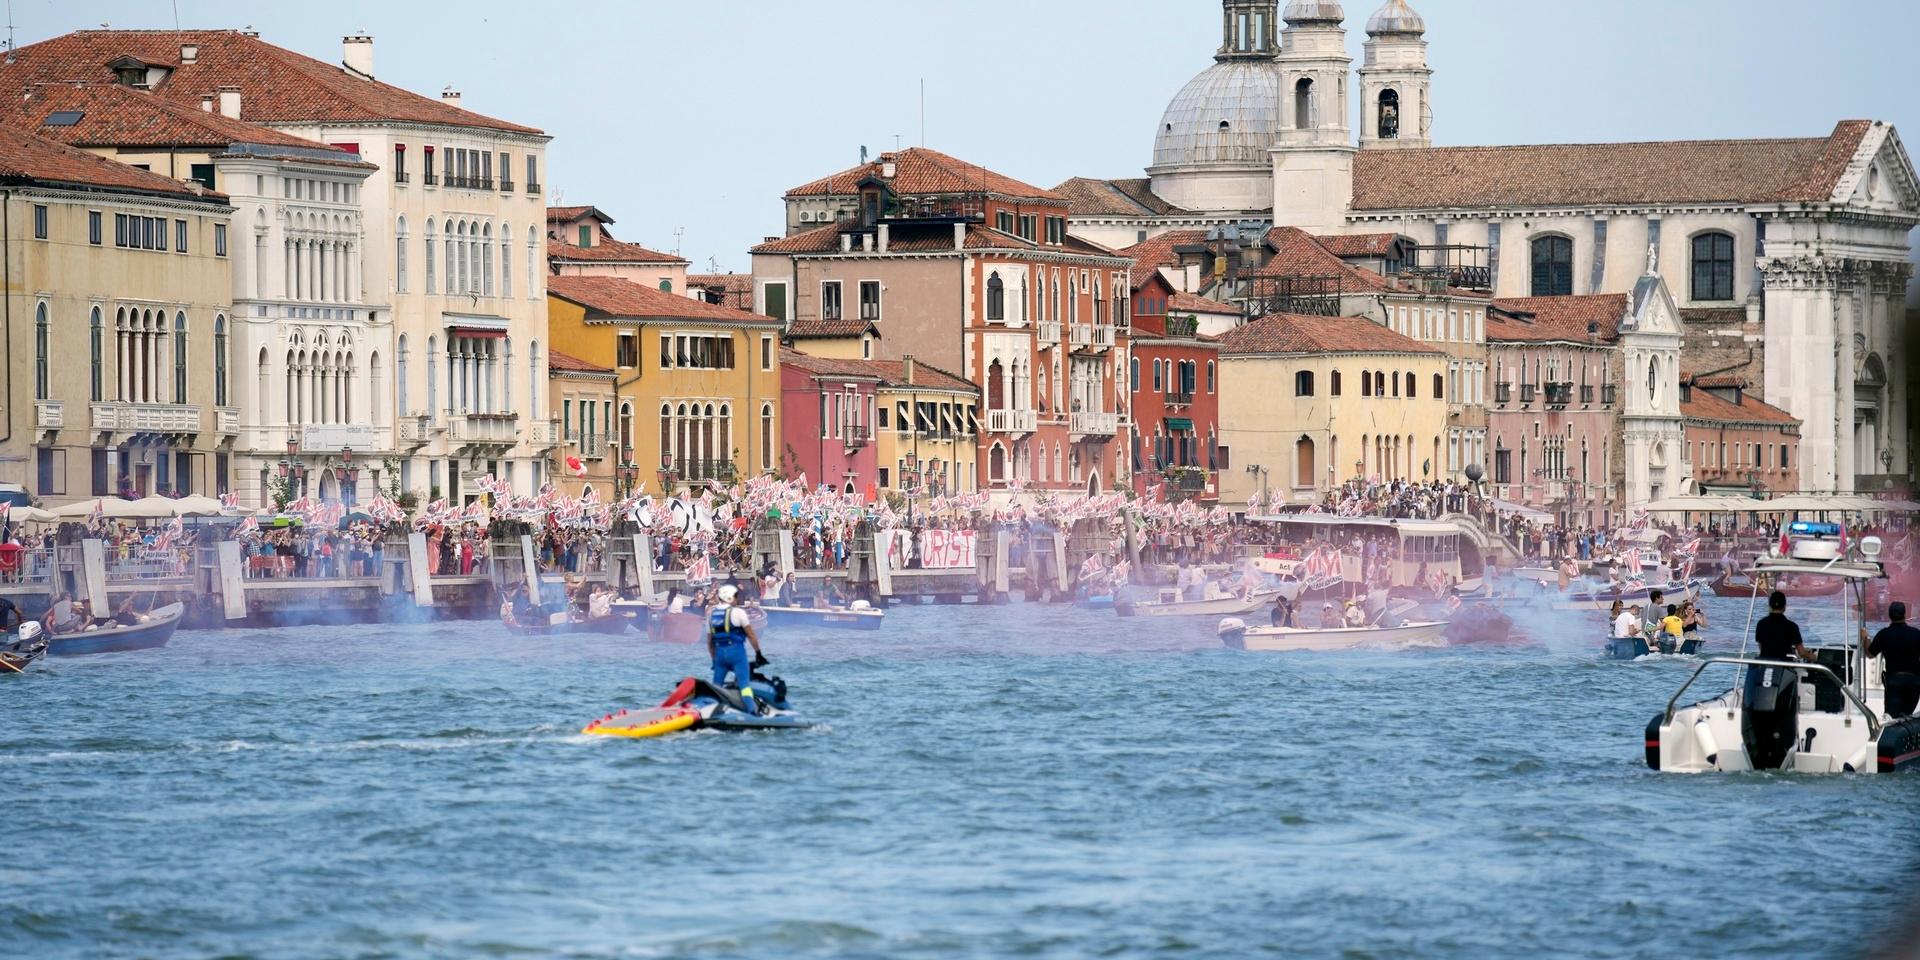 Venedig får vara kvar på FN-organet Unescos världsarvslista utan nedgraderad status ett tag till. Den italienska staden skulle klassas som hotad om man inte löste problemen med de kryssningsfartyg som lägger till i lagunen. Arkivbild.